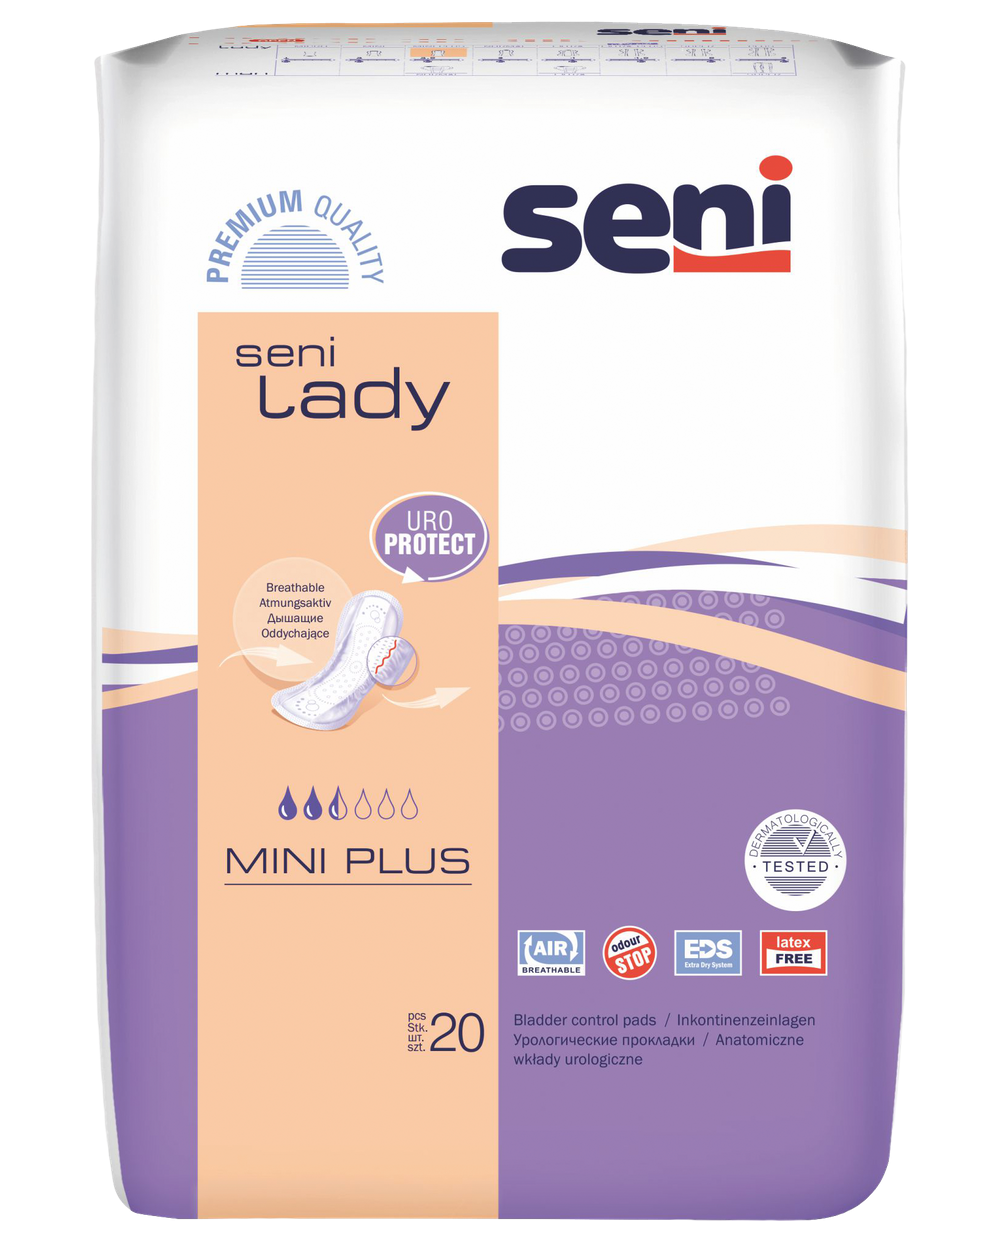 Seni Lady Slim Mini Plus Inkontinenzeinlage für Frauen - 1